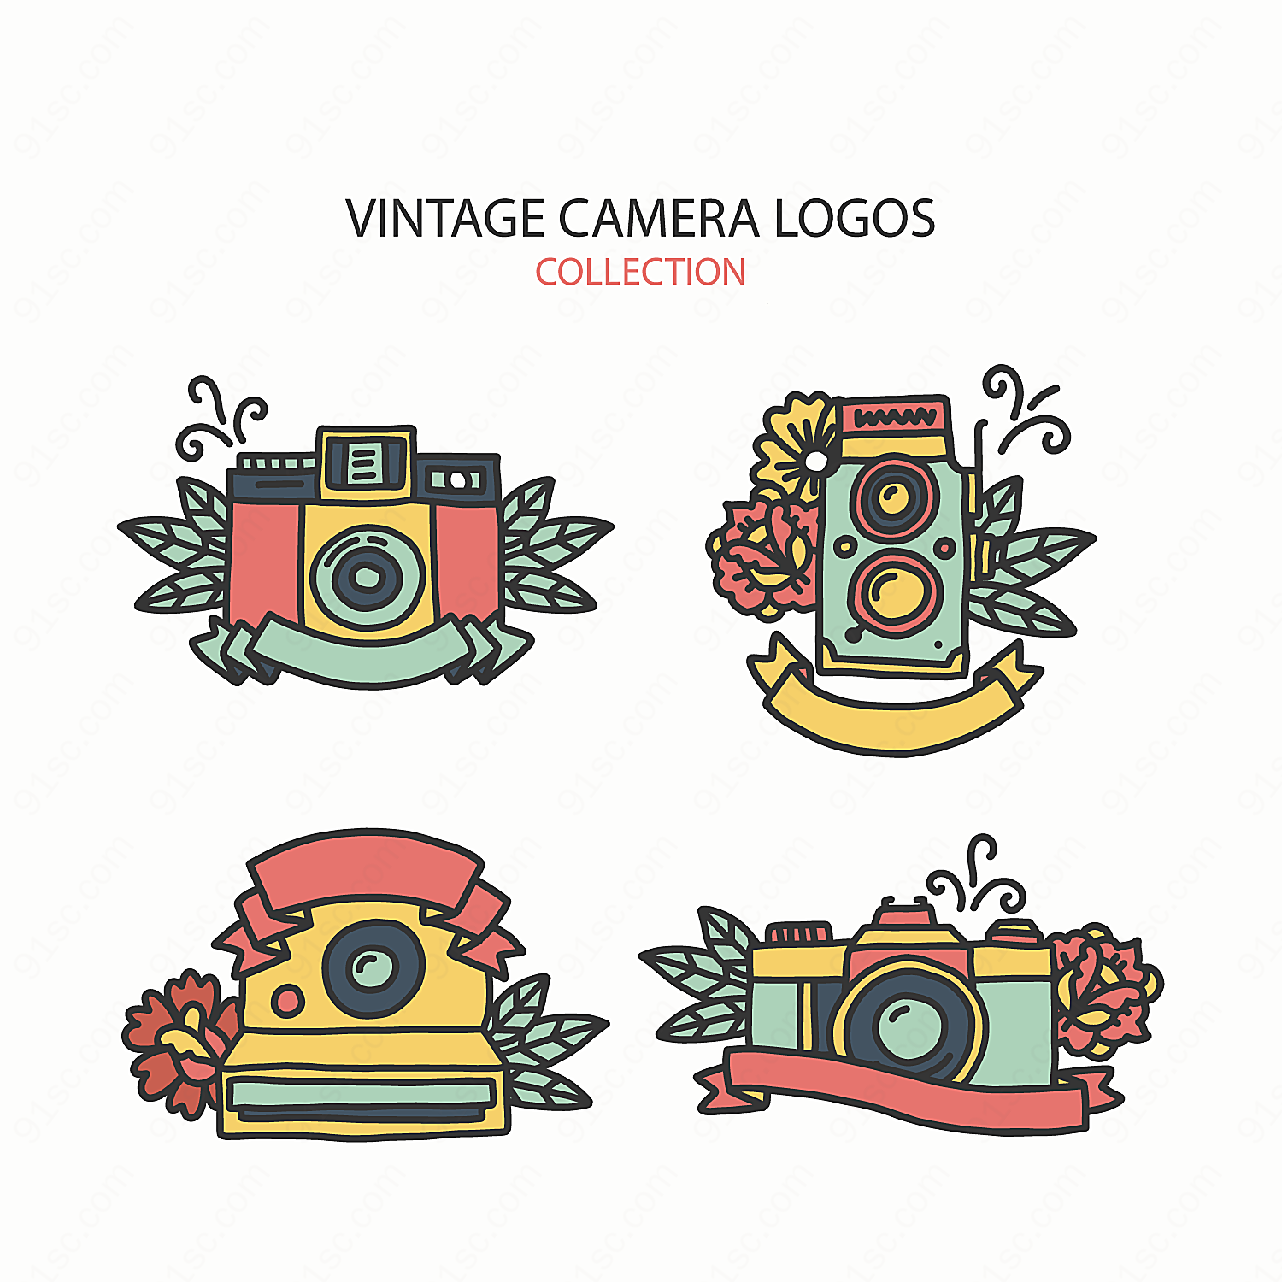 照相机和花卉标志矢量logo图形